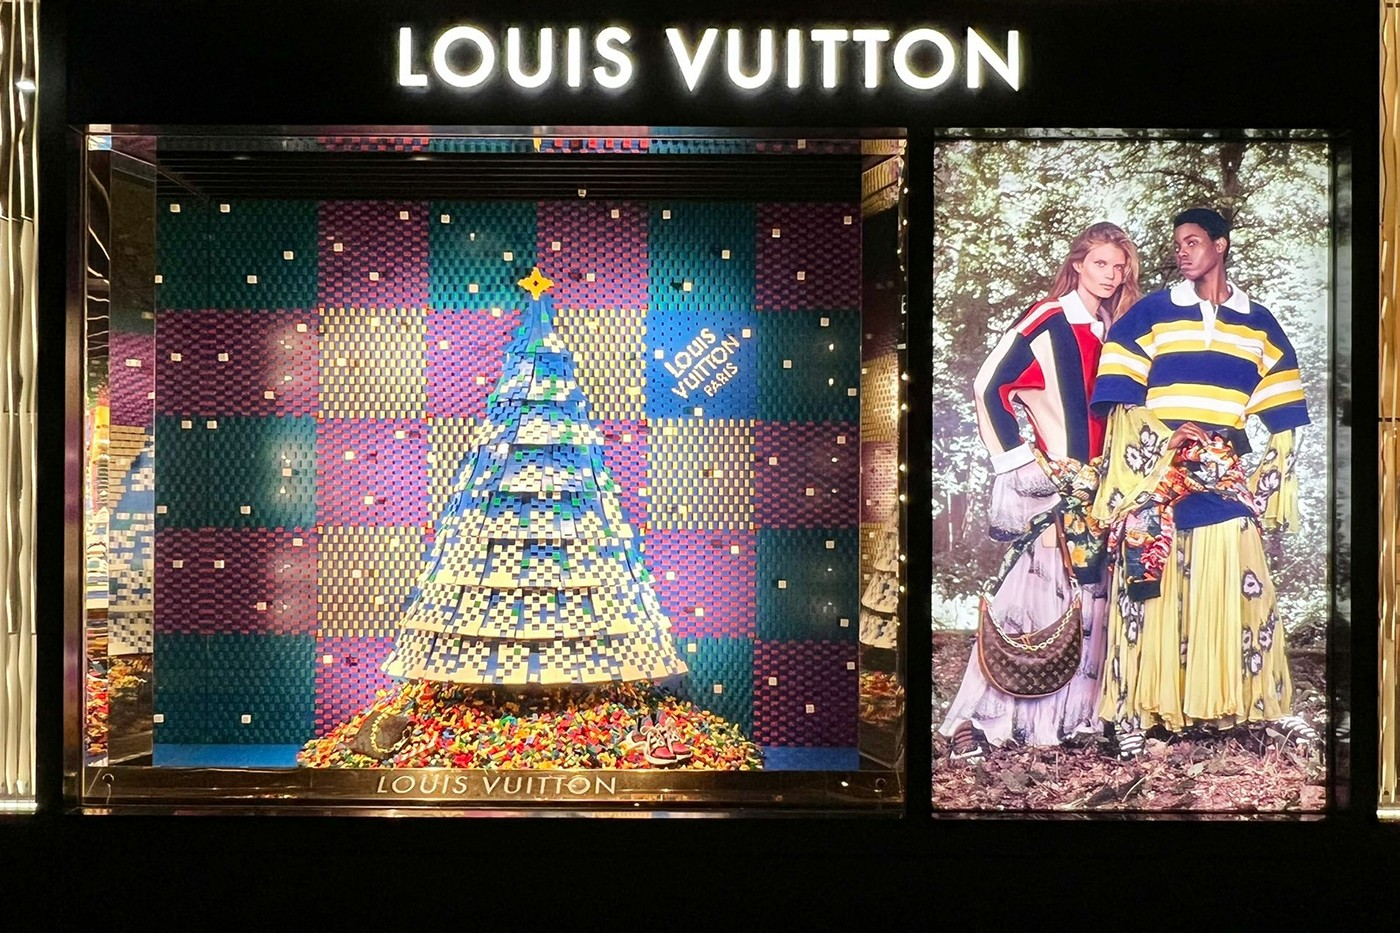 Louis Vuitton colabora com LEGO em vitrines de final de ano - EP GRUPO   Conteúdo - Mentoria - Eventos - Marcas e Personagens - Brinquedo e Papelaria